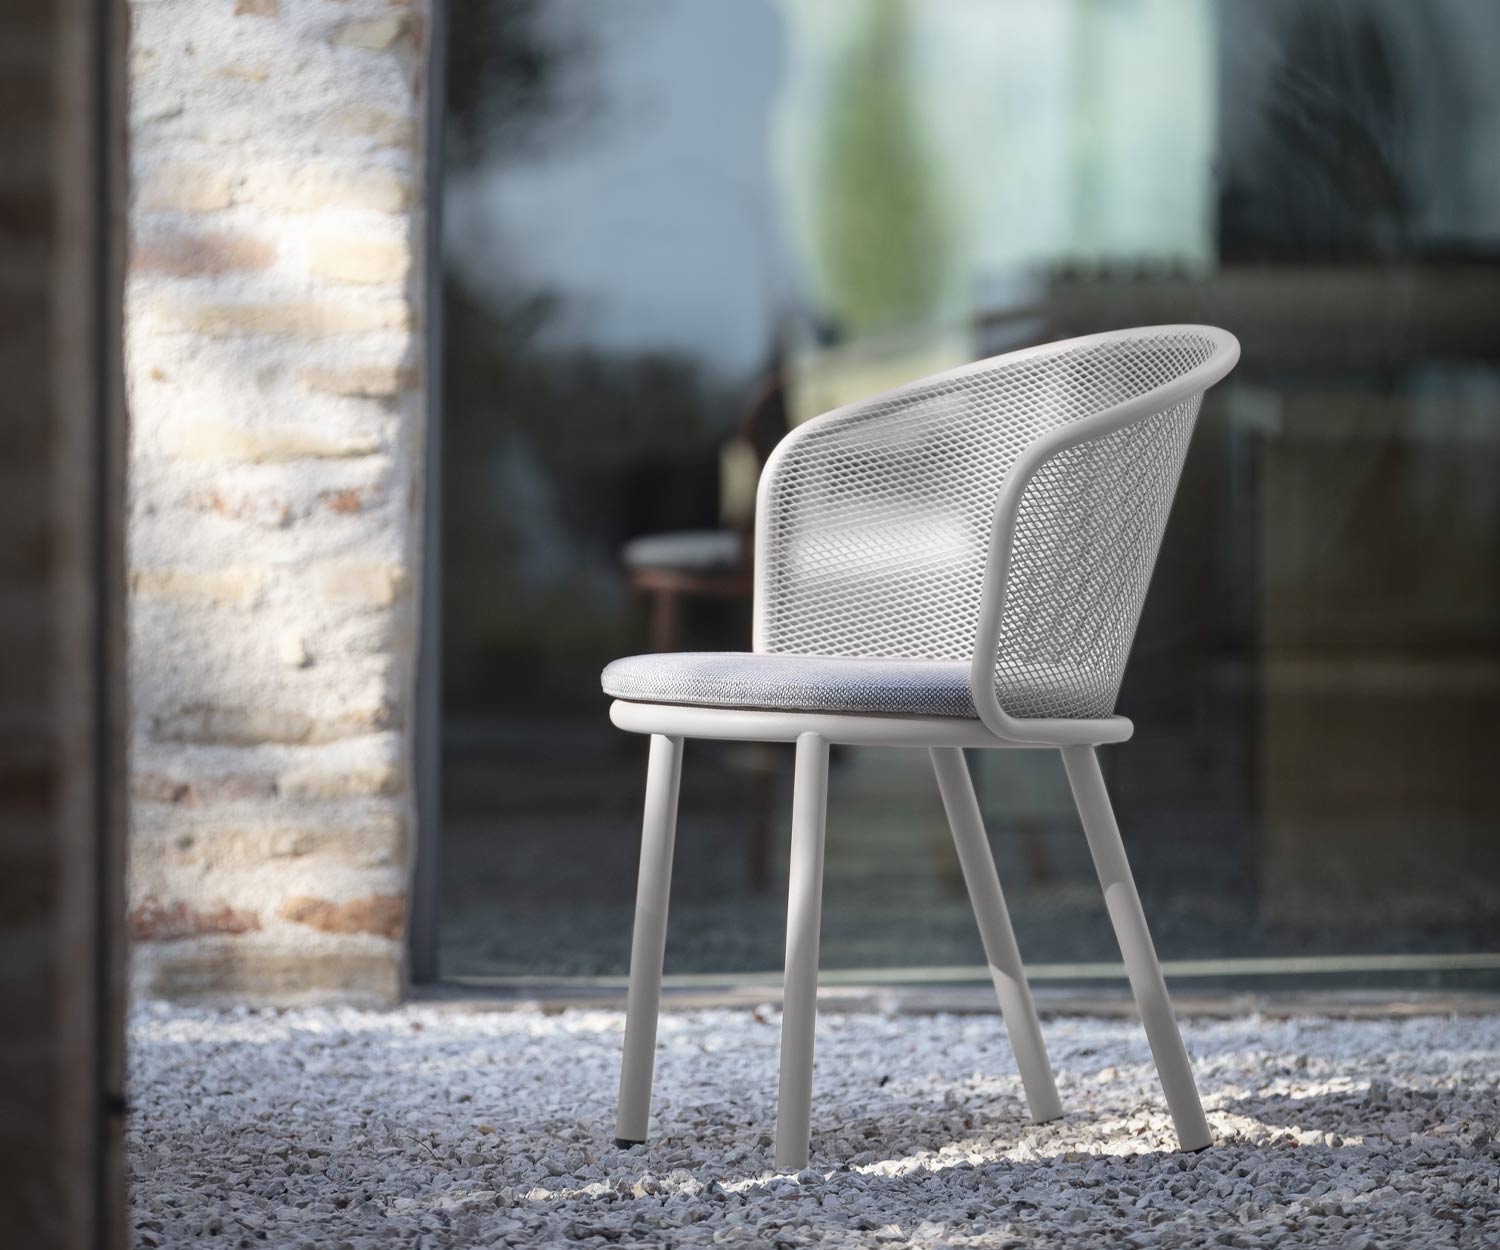 Chaise de loisirs blanche Todus avec revêtement gris sur surface en gravier